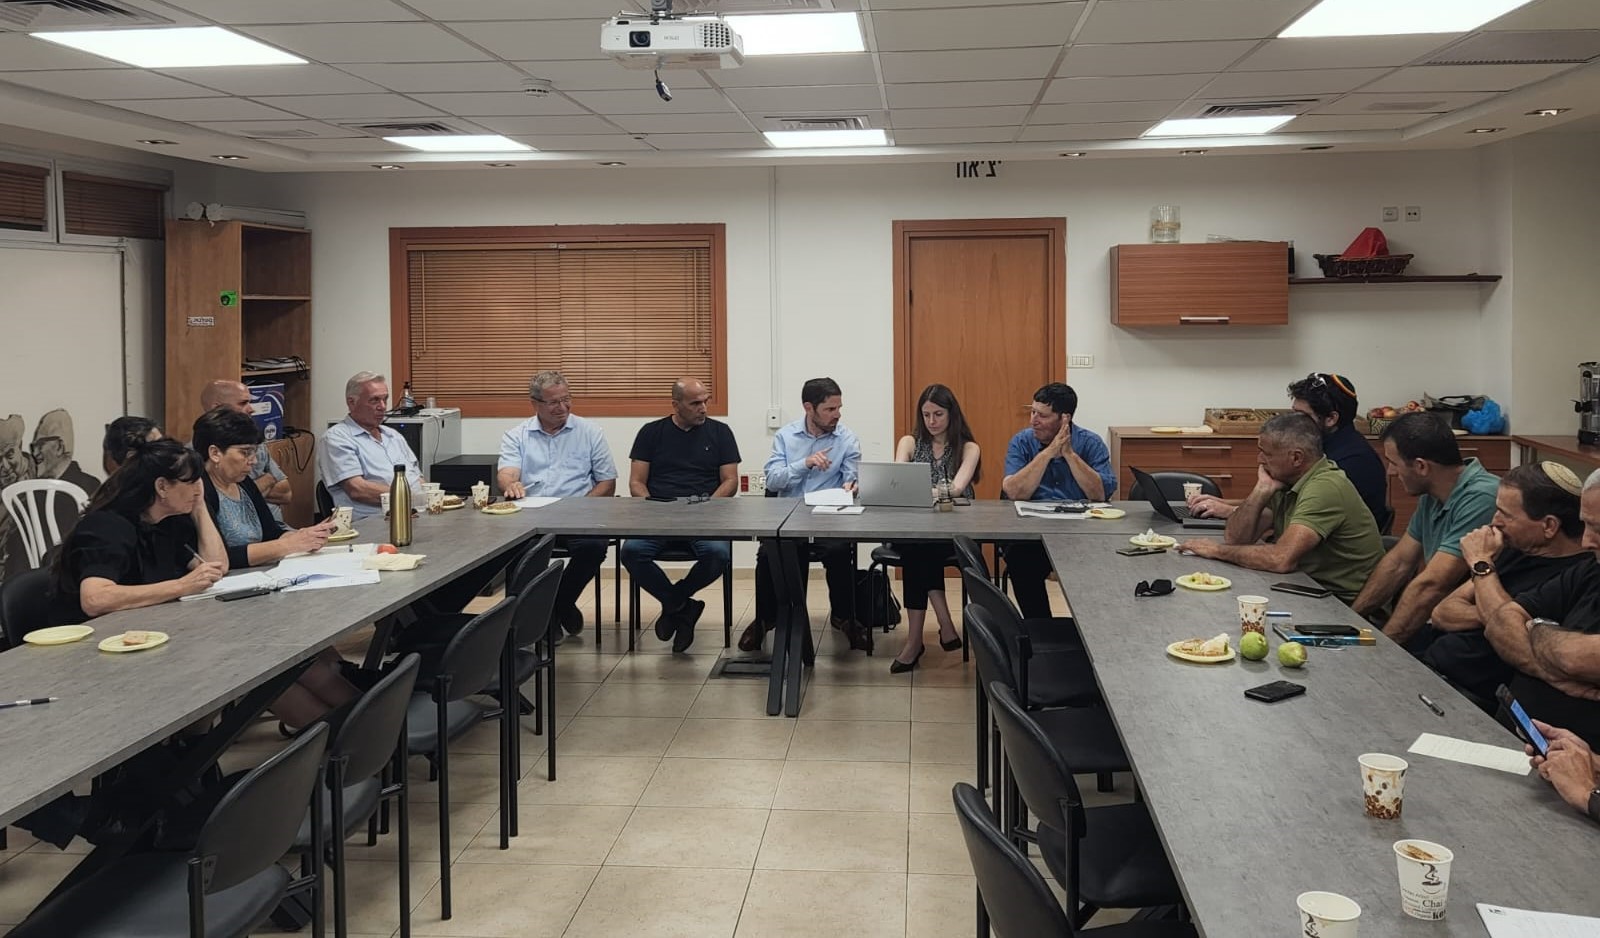 ליפשיץ (במרכז התמונה) בשיחה עם מזכירות התאחדות חקלאי ישראל. מצדדיו: ניר מאיר, עמית יפרח ואבו וילן 